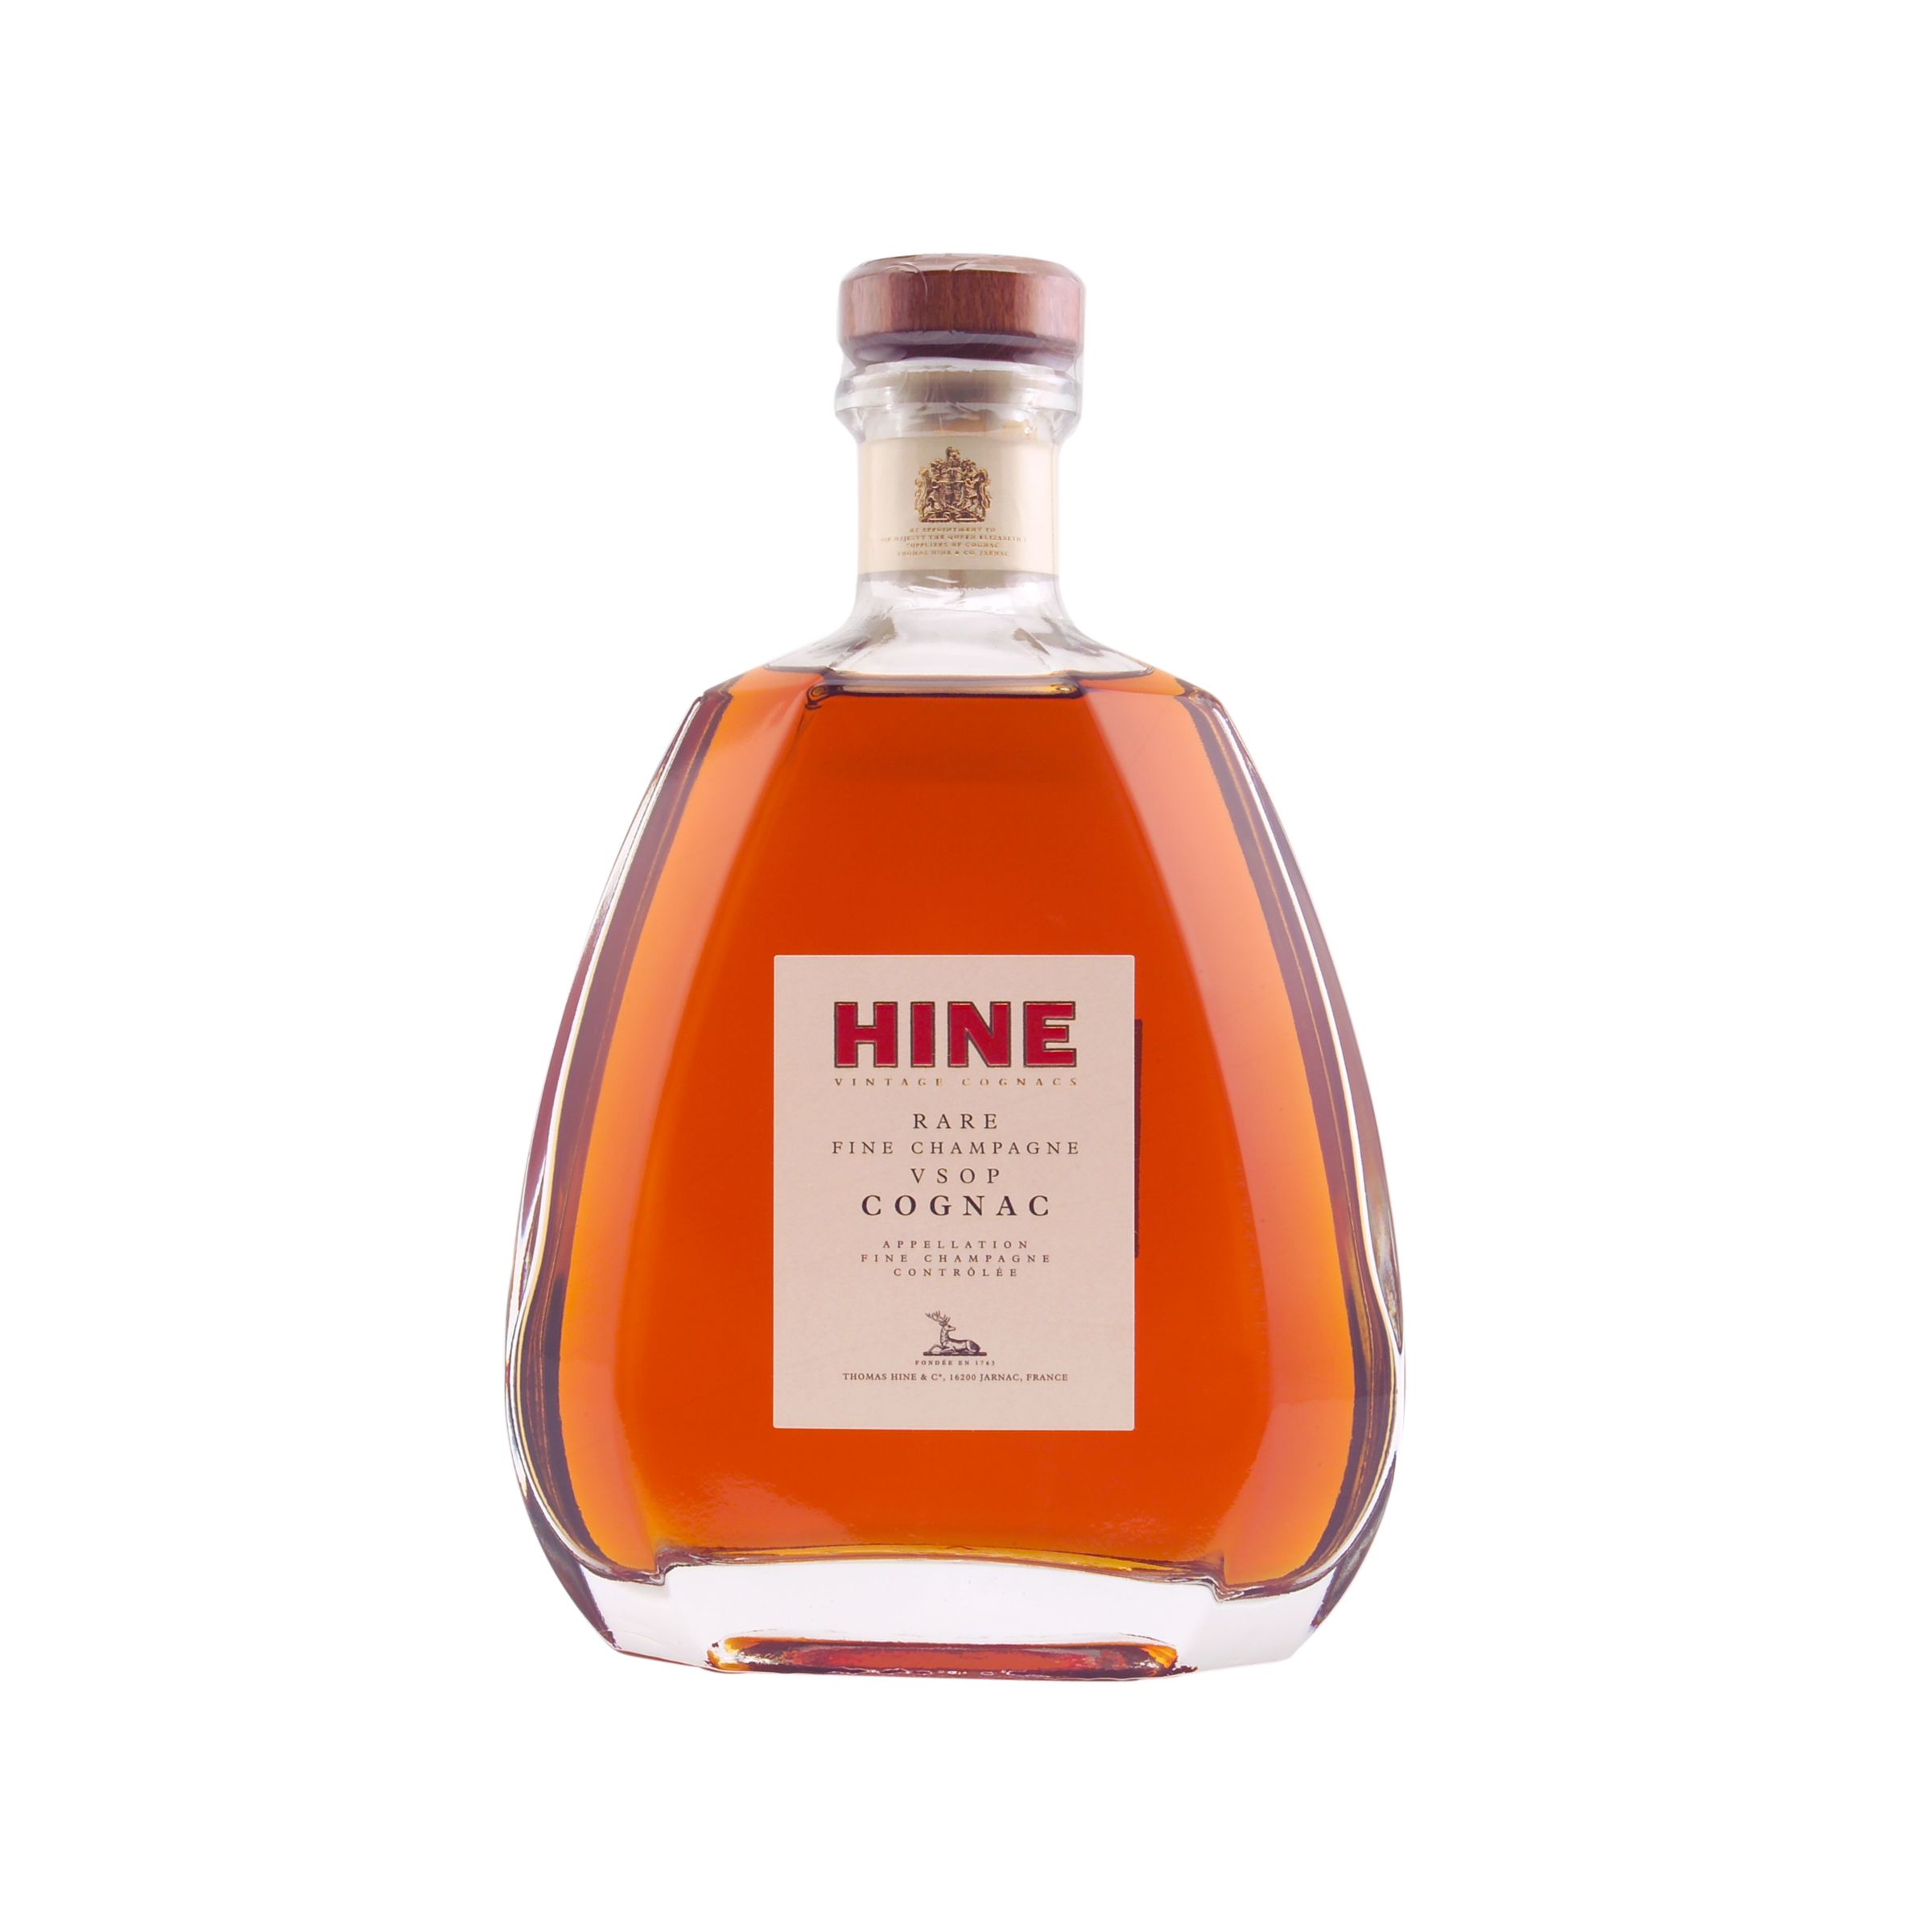 Hine Rare VSOP Cognac at John Lewis